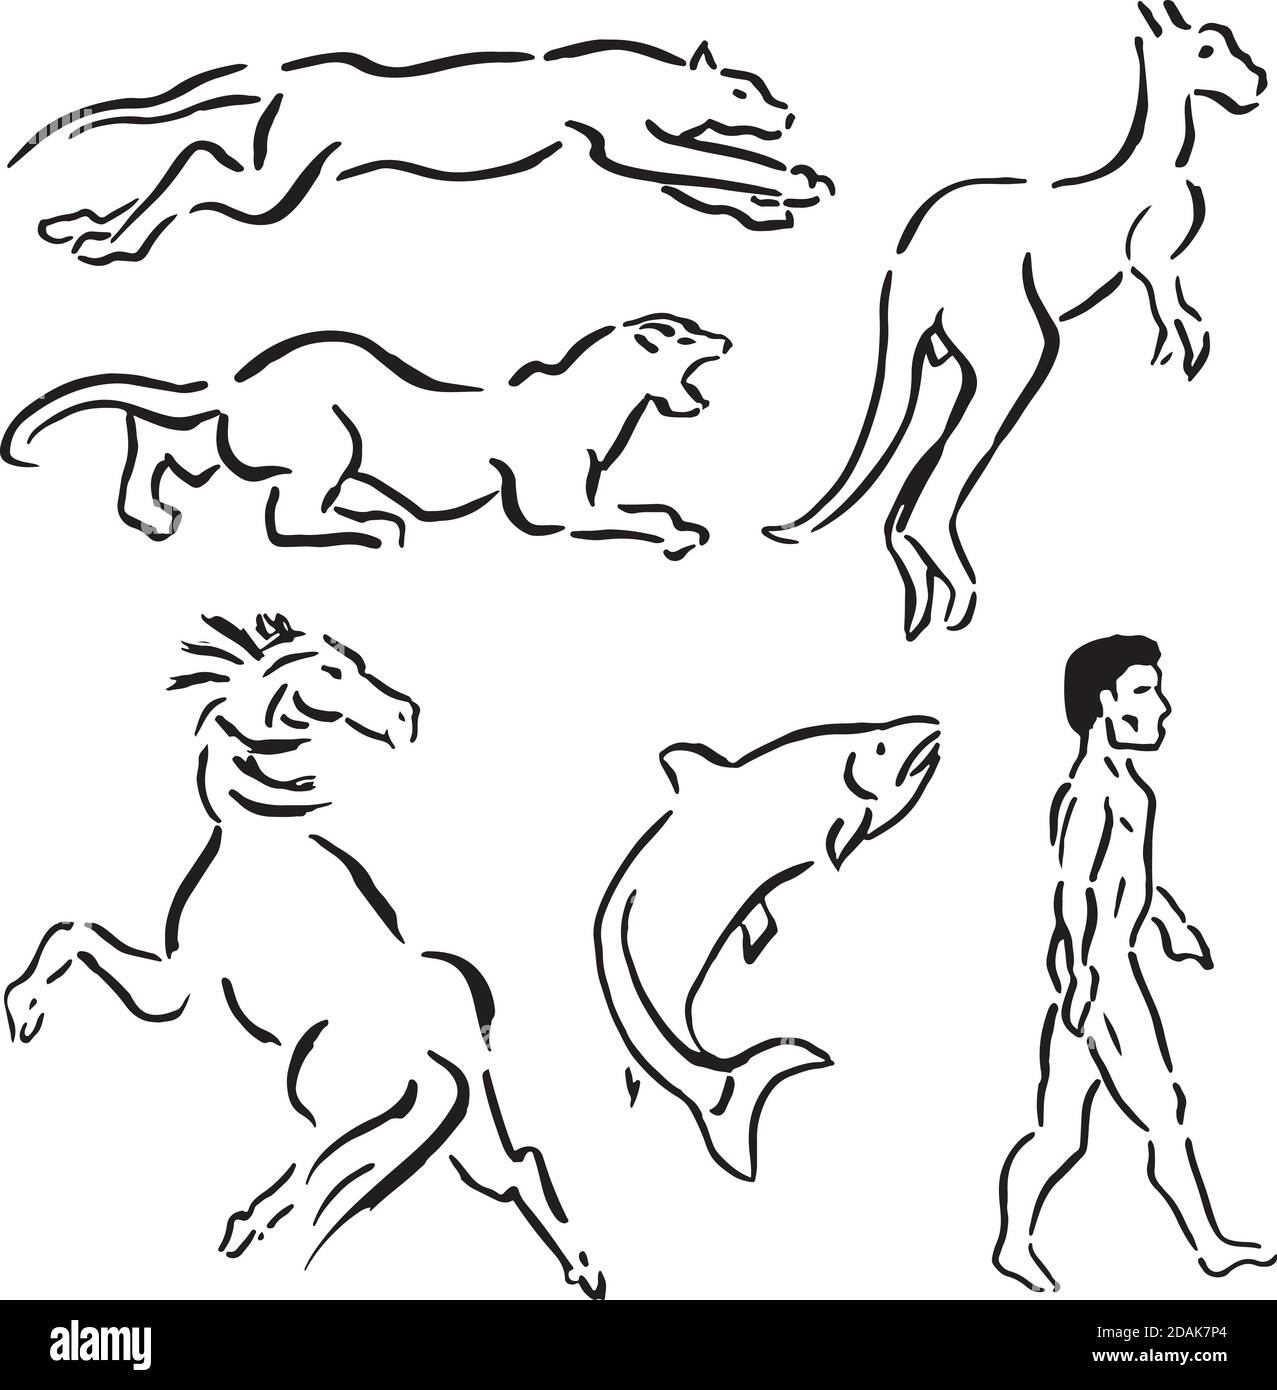 Ensemble de dessin d'animaux comme le léopard, puma, kangourou, cheval, saumon et un homme marchant, en forme de pinceau à encre. Dessin à la main et retouche numérique. Banque D'Images